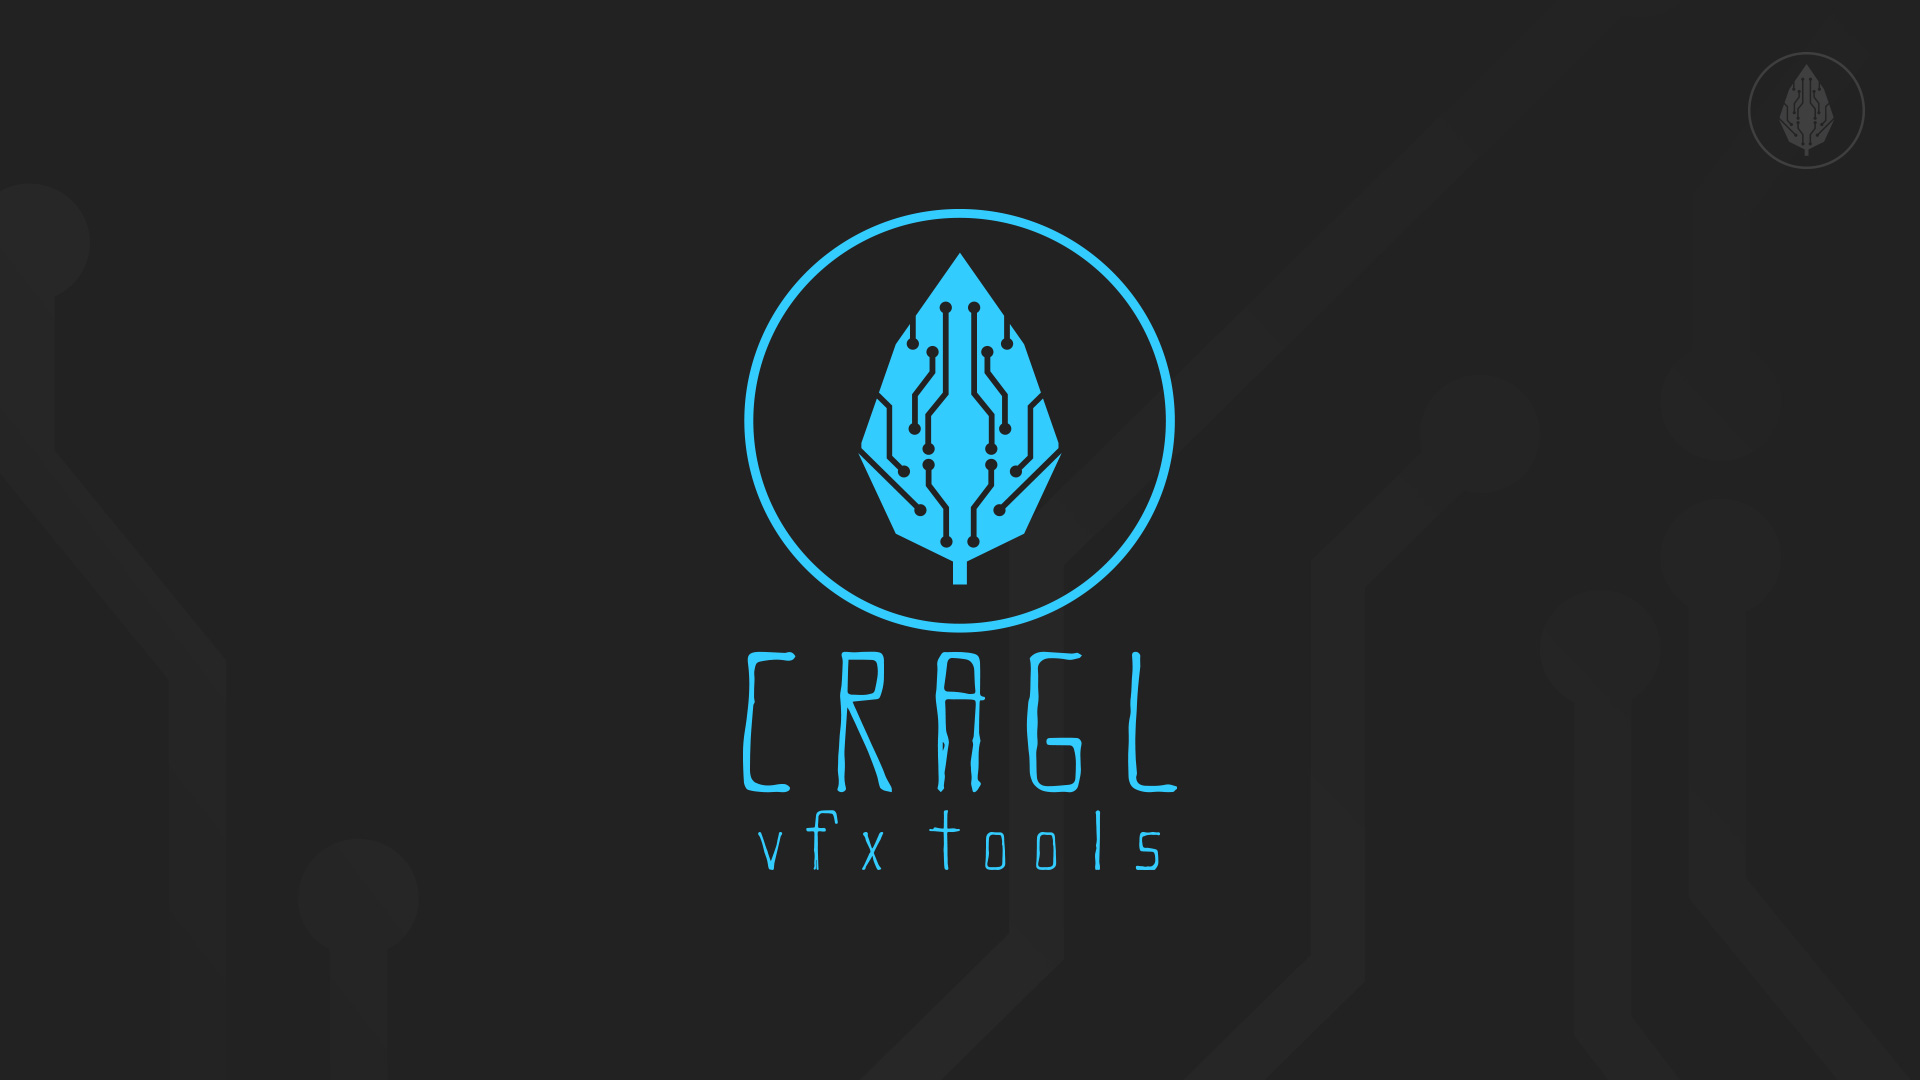 cragl - vfx tools